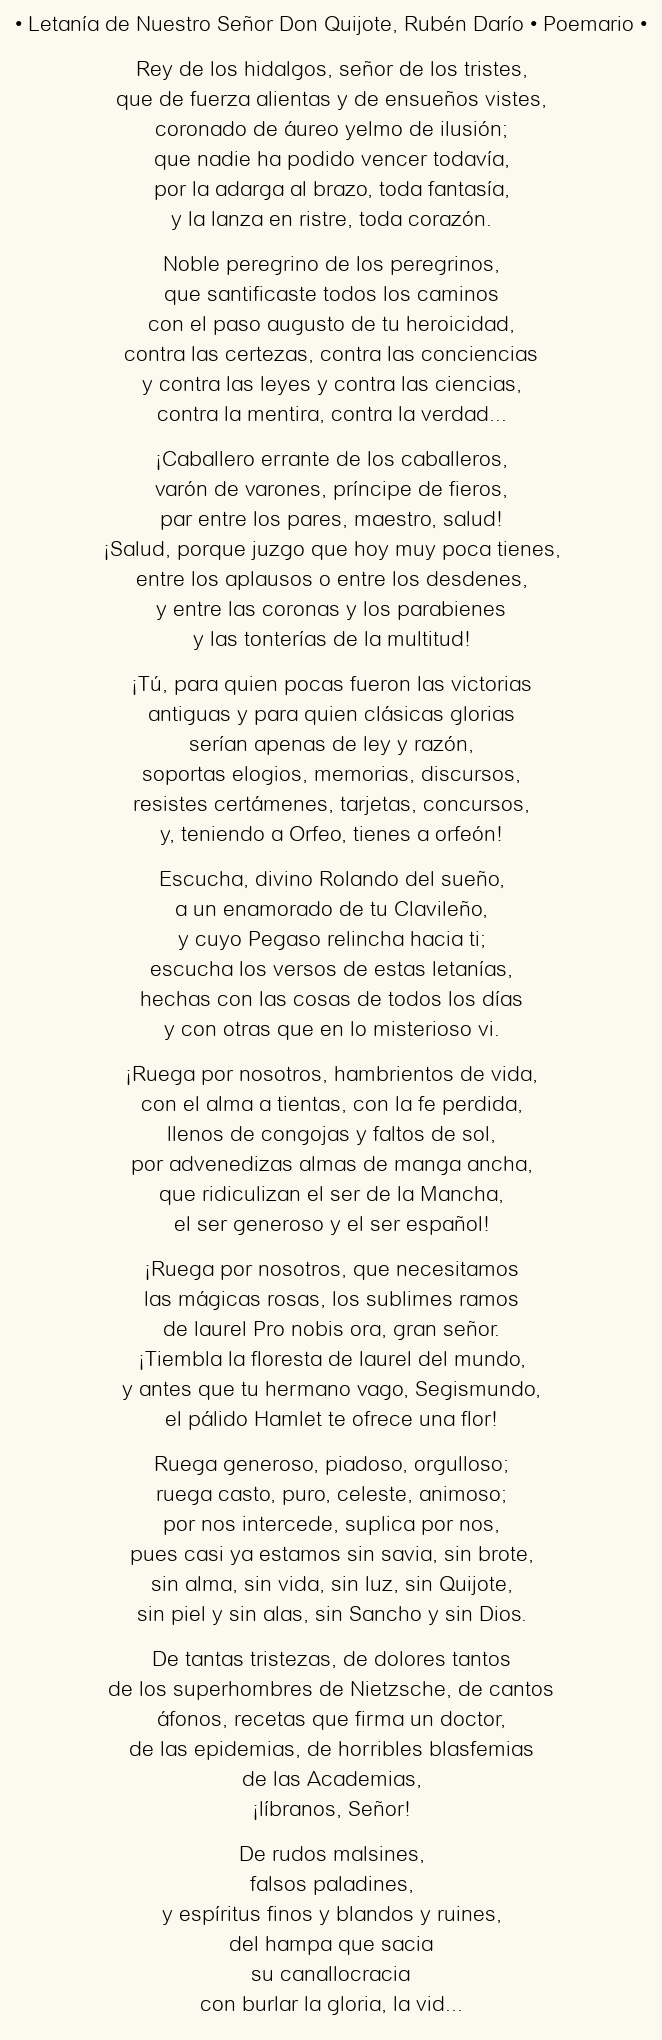 Imagen con el poema Letanía de Nuestro Señor Don Quijote, por Rubén Darío